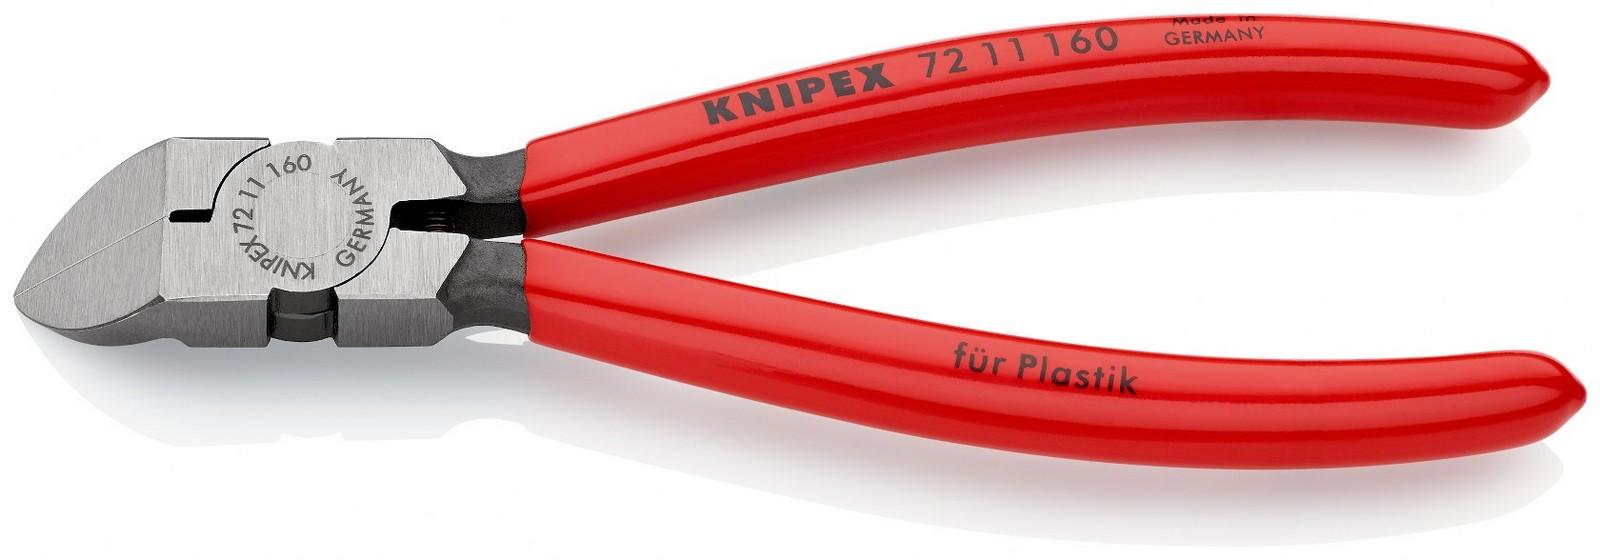 KNIPEX Klešta kose za plastiku pod uglom od 45° 160mm 72 11 160 crvena